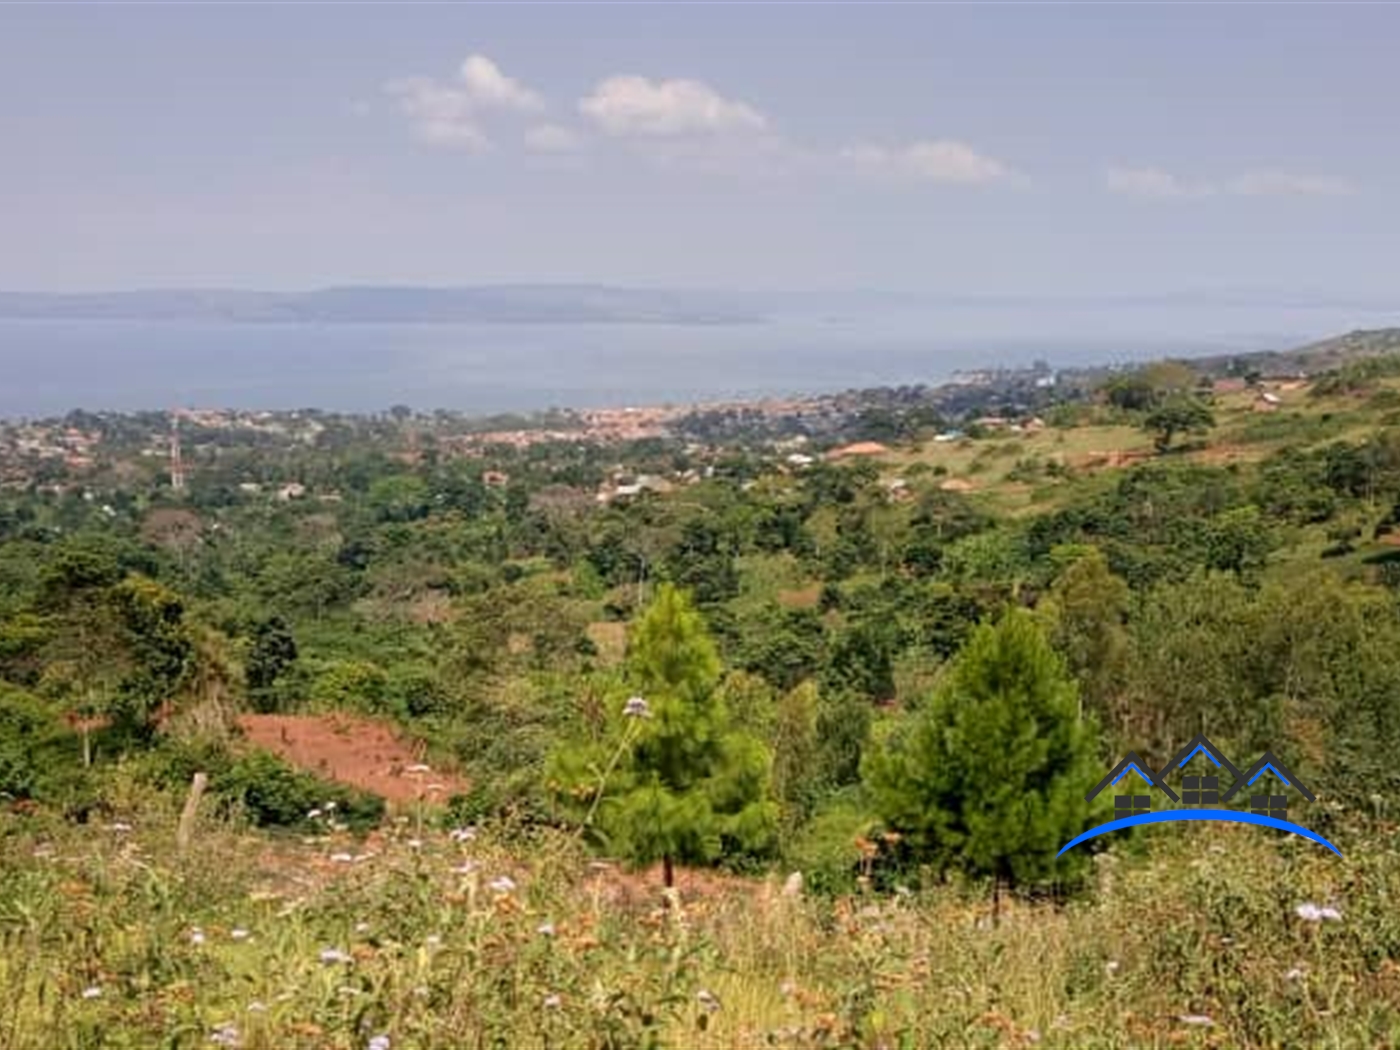 Residential Land for sale in Kiyindi Buyikwe